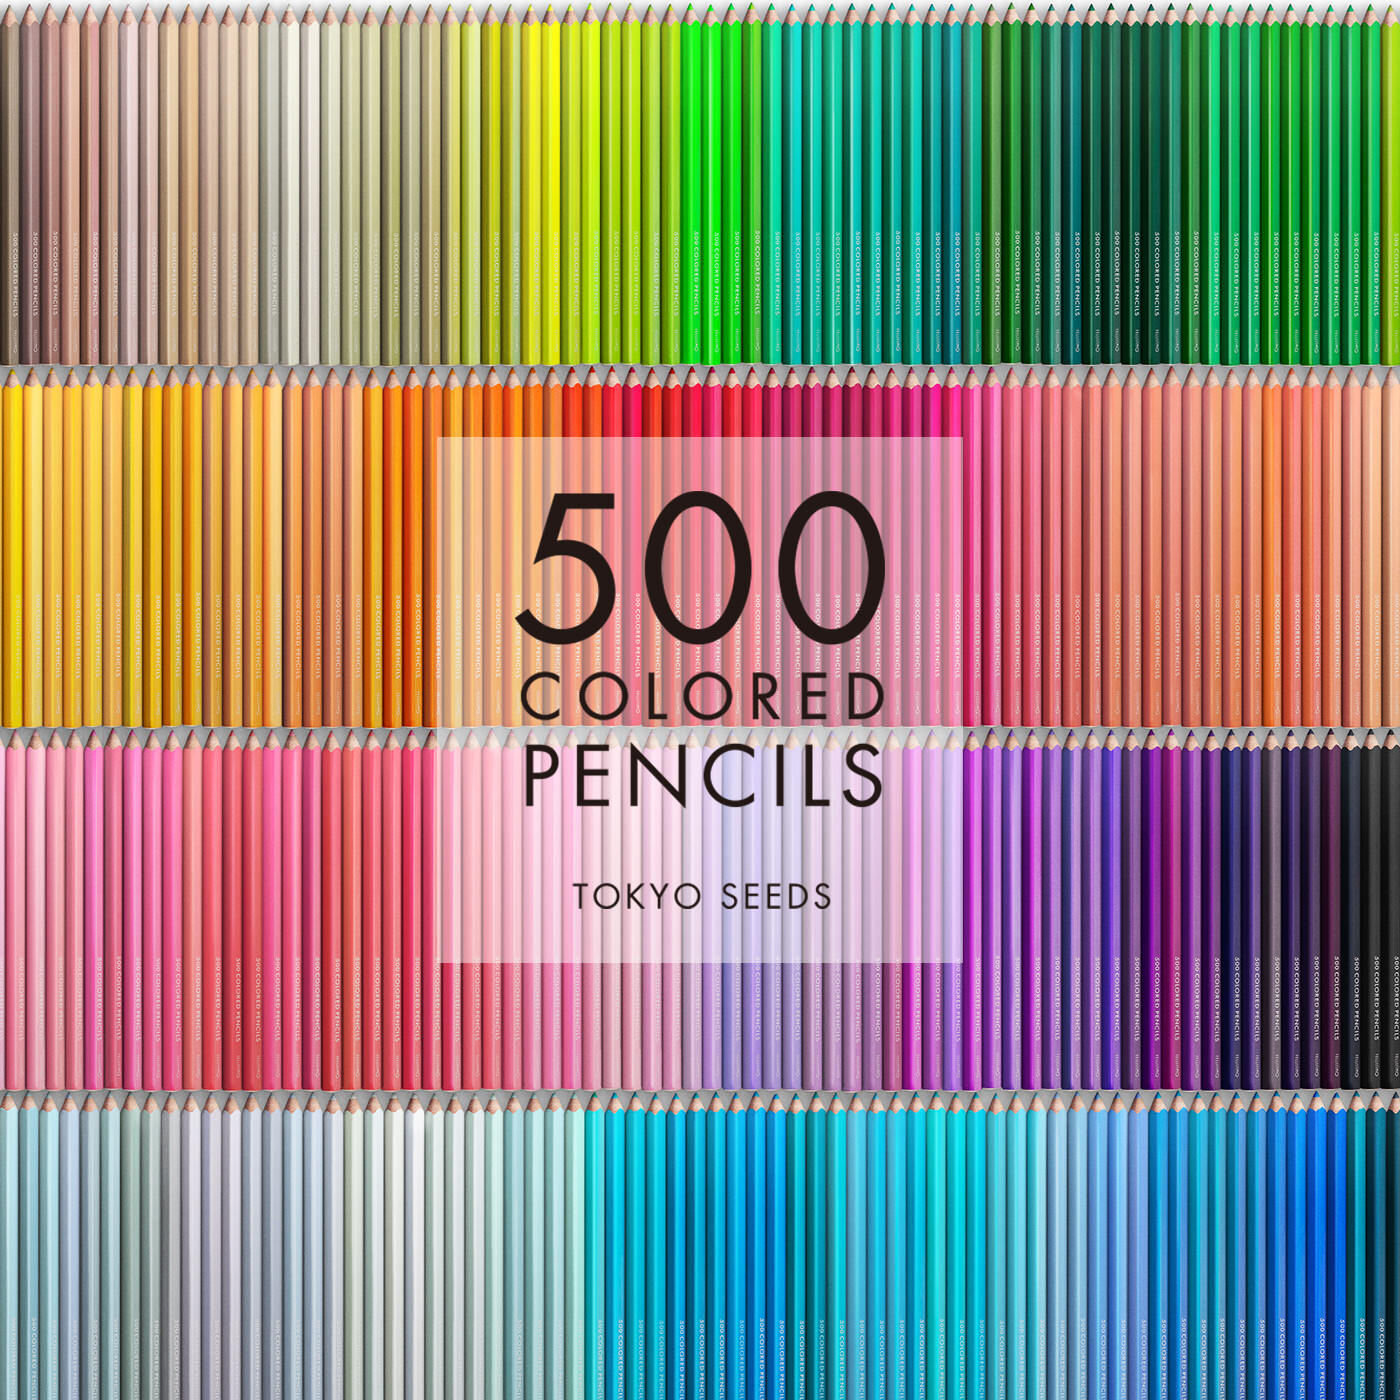 Real Stock|【183/500 BURNT SAGE】500色の色えんぴつ TOKYO SEEDS|1992年、世界初の「500色」という膨大な色数の色えんぴつが誕生して以来、その販売数は発売当初から合わせると、世界55ヵ国10万セット以上。今回、メイド・イン・ジャパンにこだわり、すべてが新しく生まれ変わって登場しました。